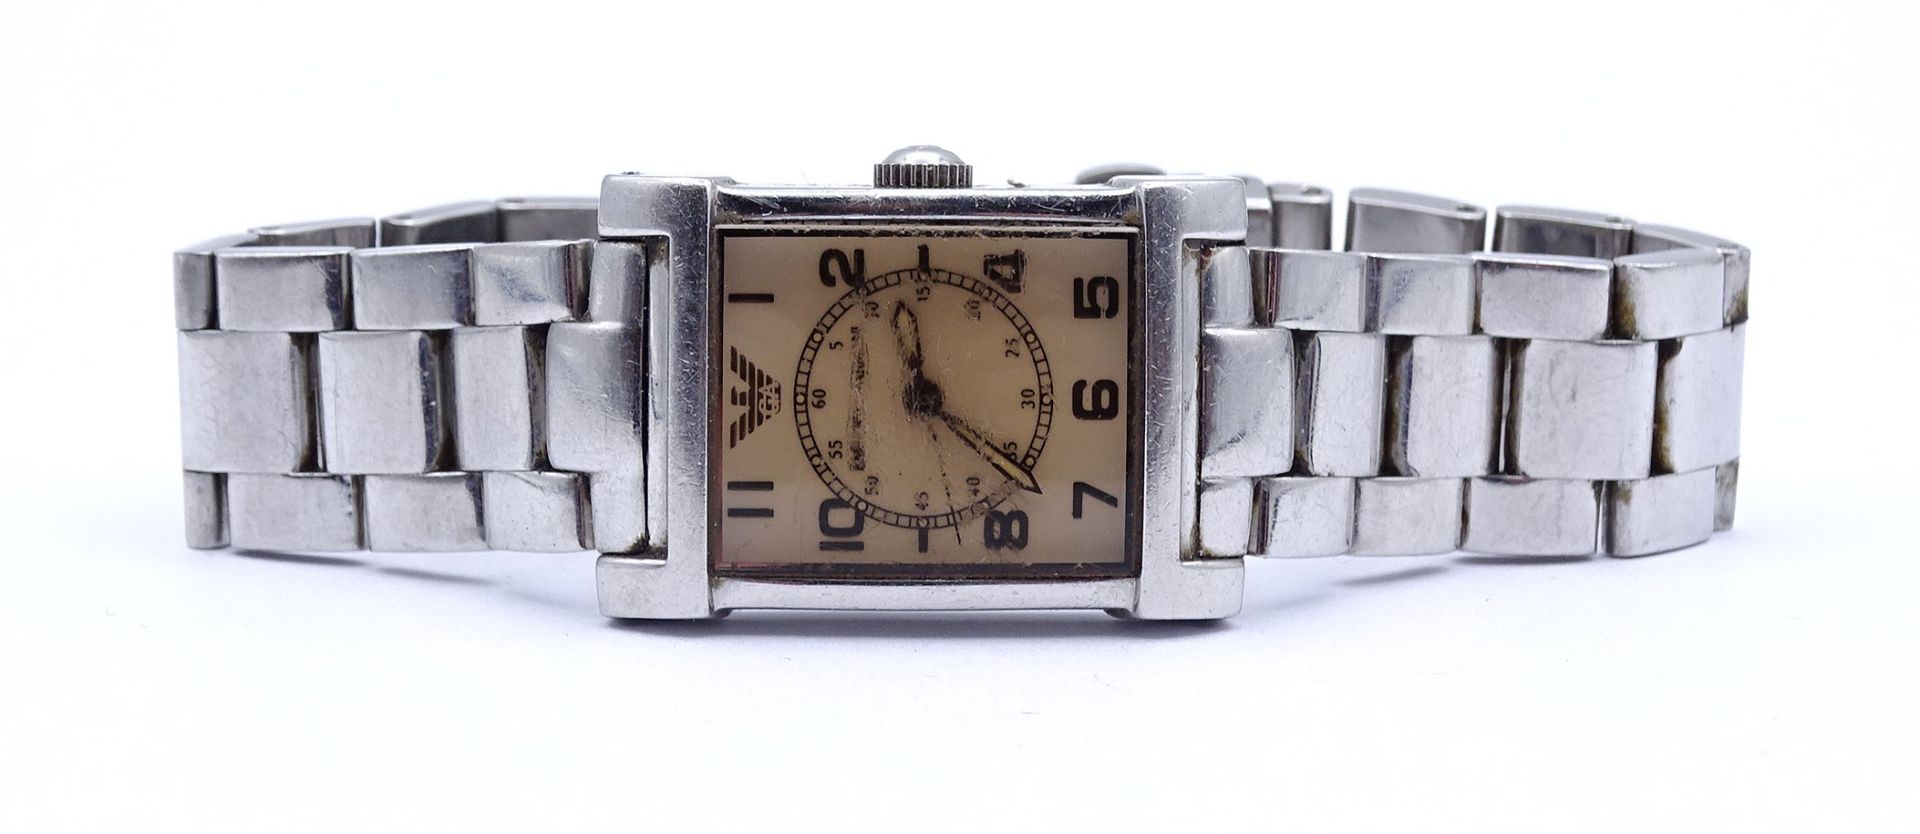 Damen Armbanduhr "Emporio Armani", Quartzwerk, Gehäuse 23x27mm, starke Tragespuren